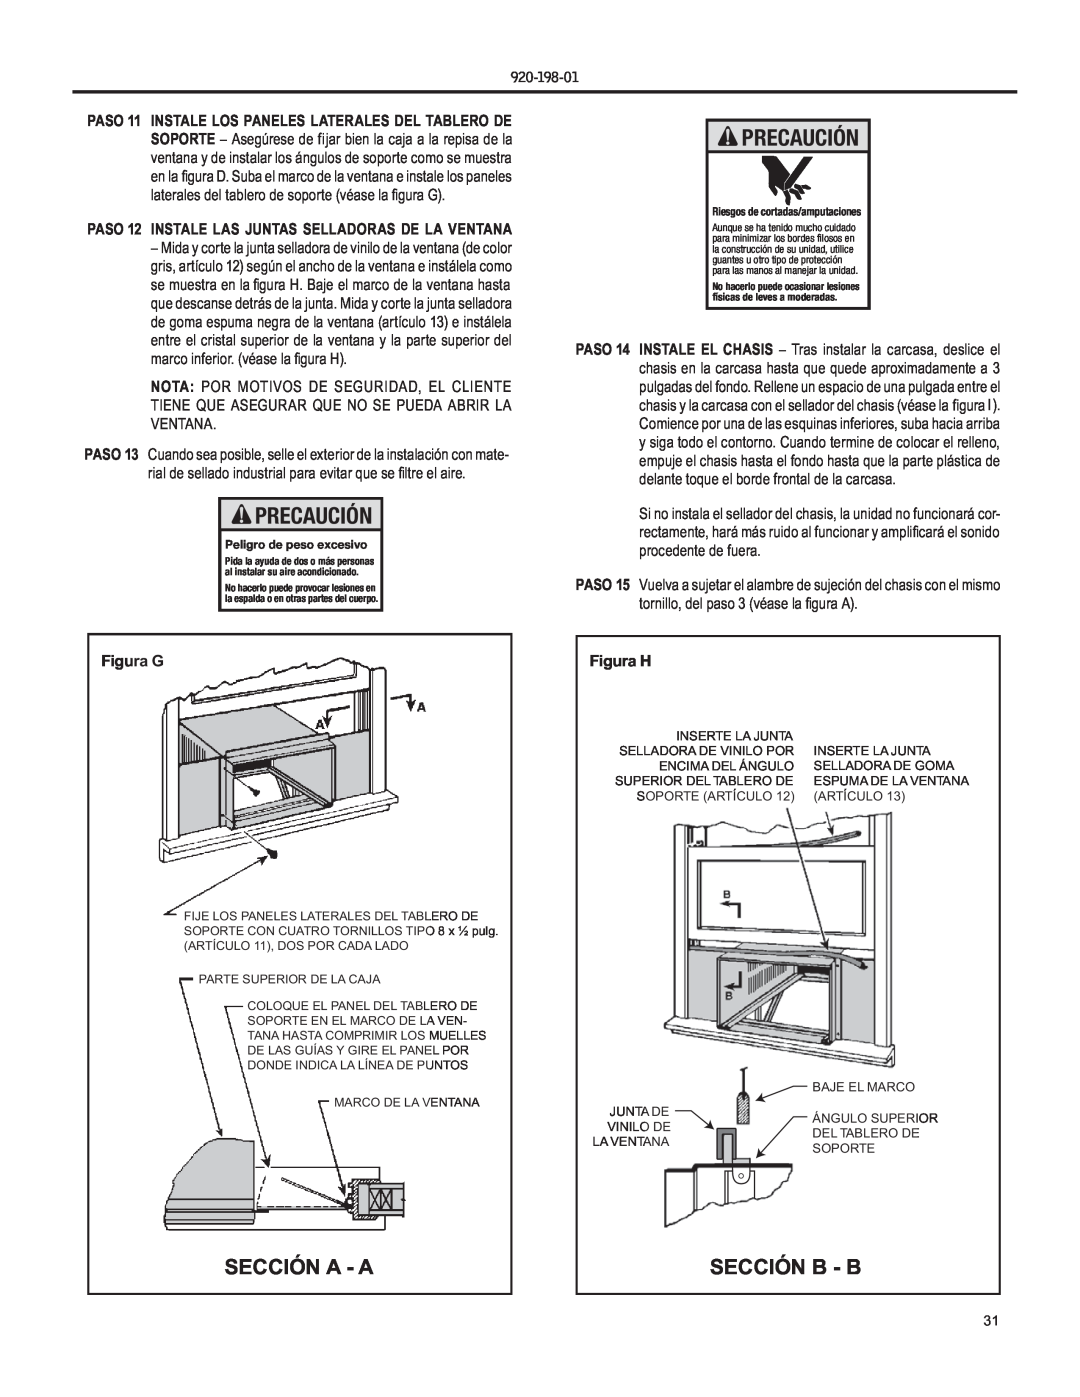 Friedrich YS09 operation manual Sección A - A, Sección B - B, Figura G, Figura H, Precaución 